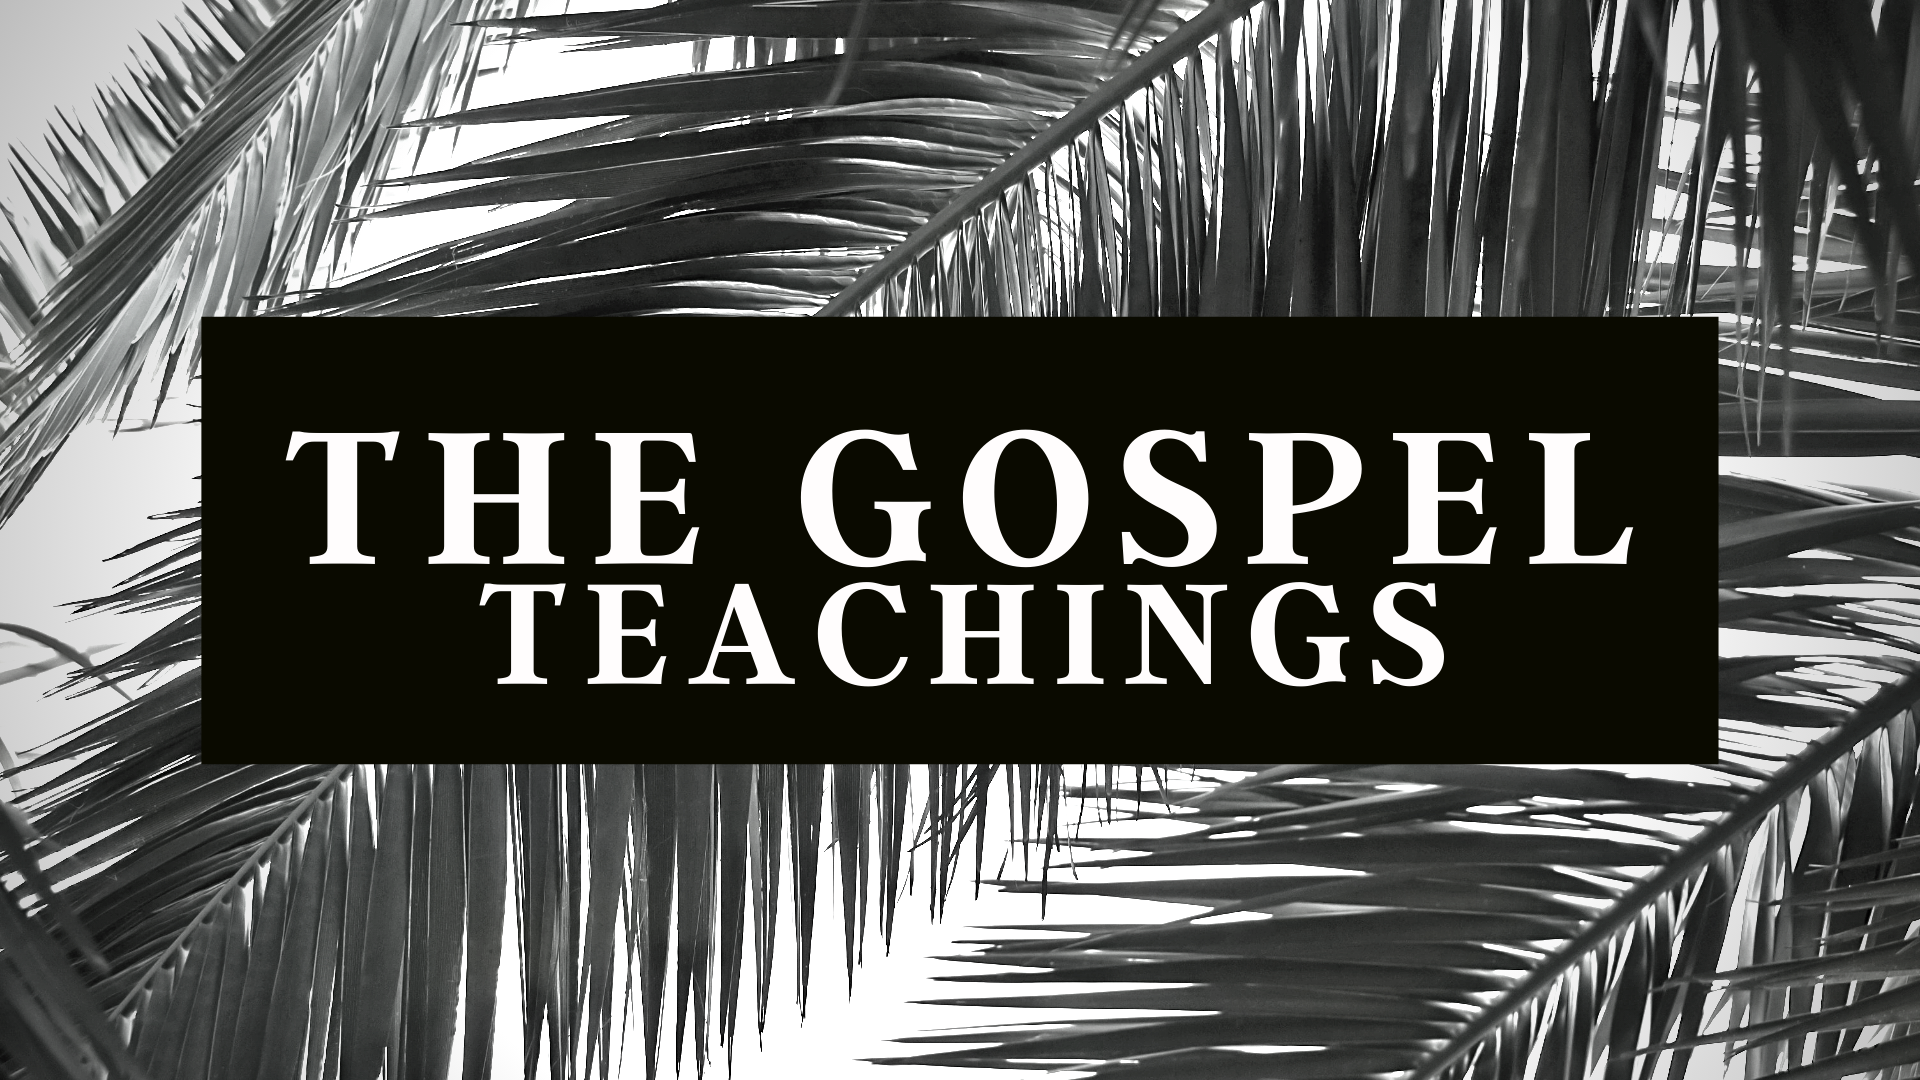 THE GOSPEL TEACHINGS